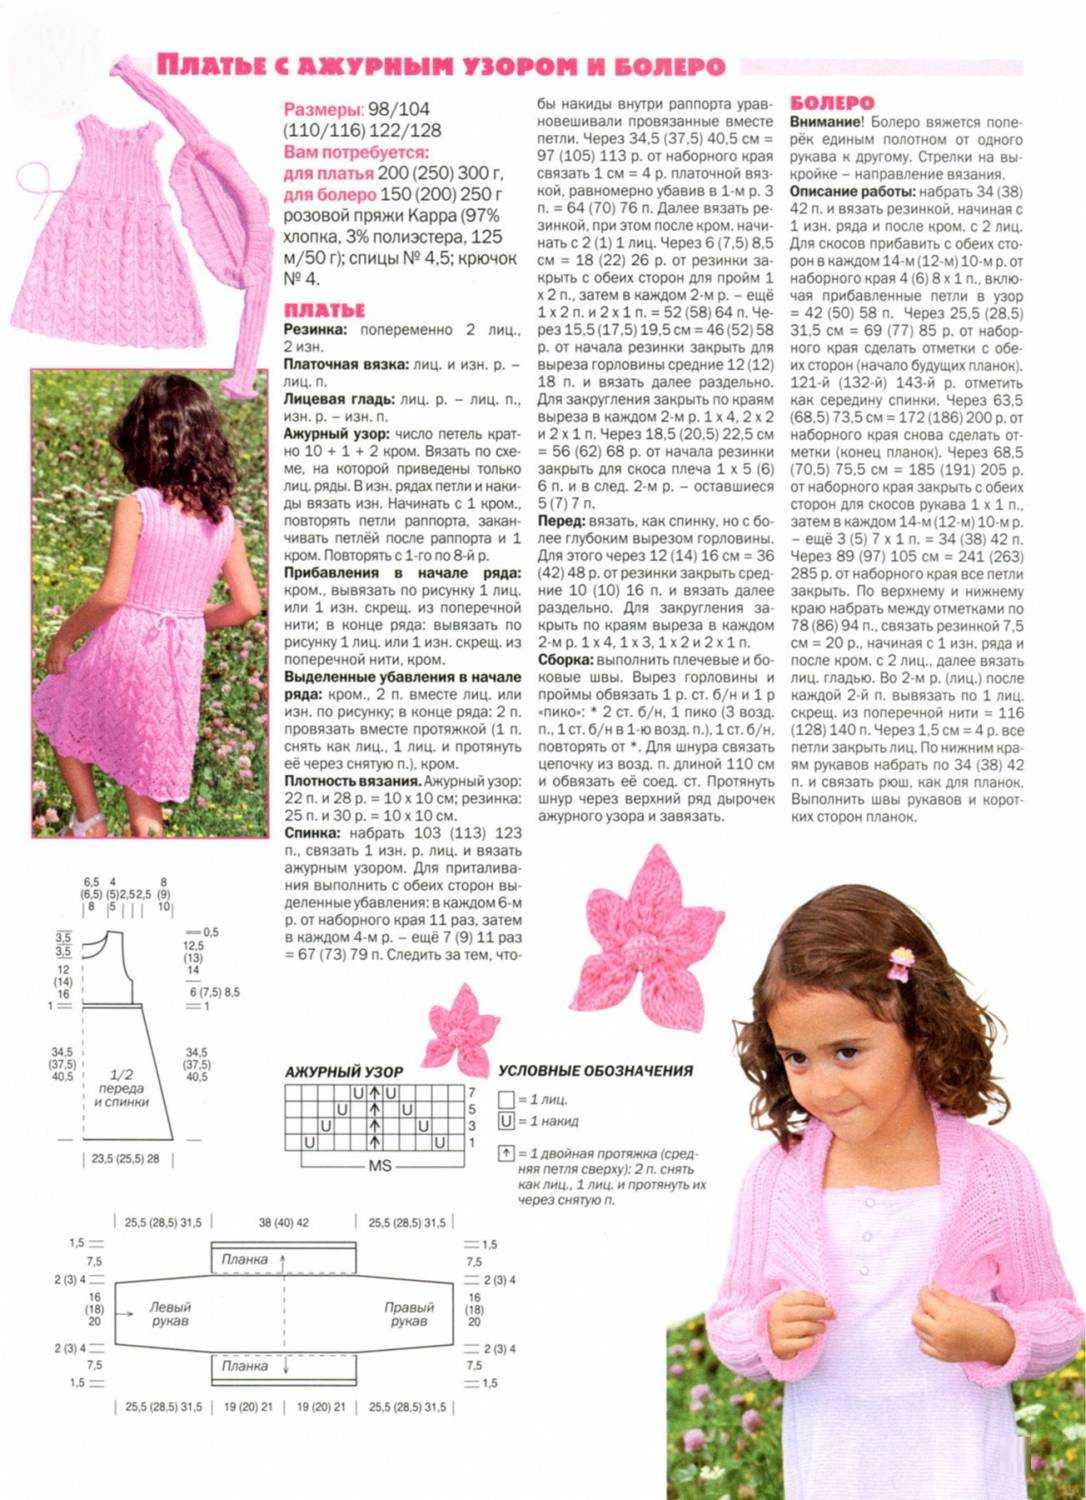 Техника вязания спицами болеро для девочки с описанием и схемой